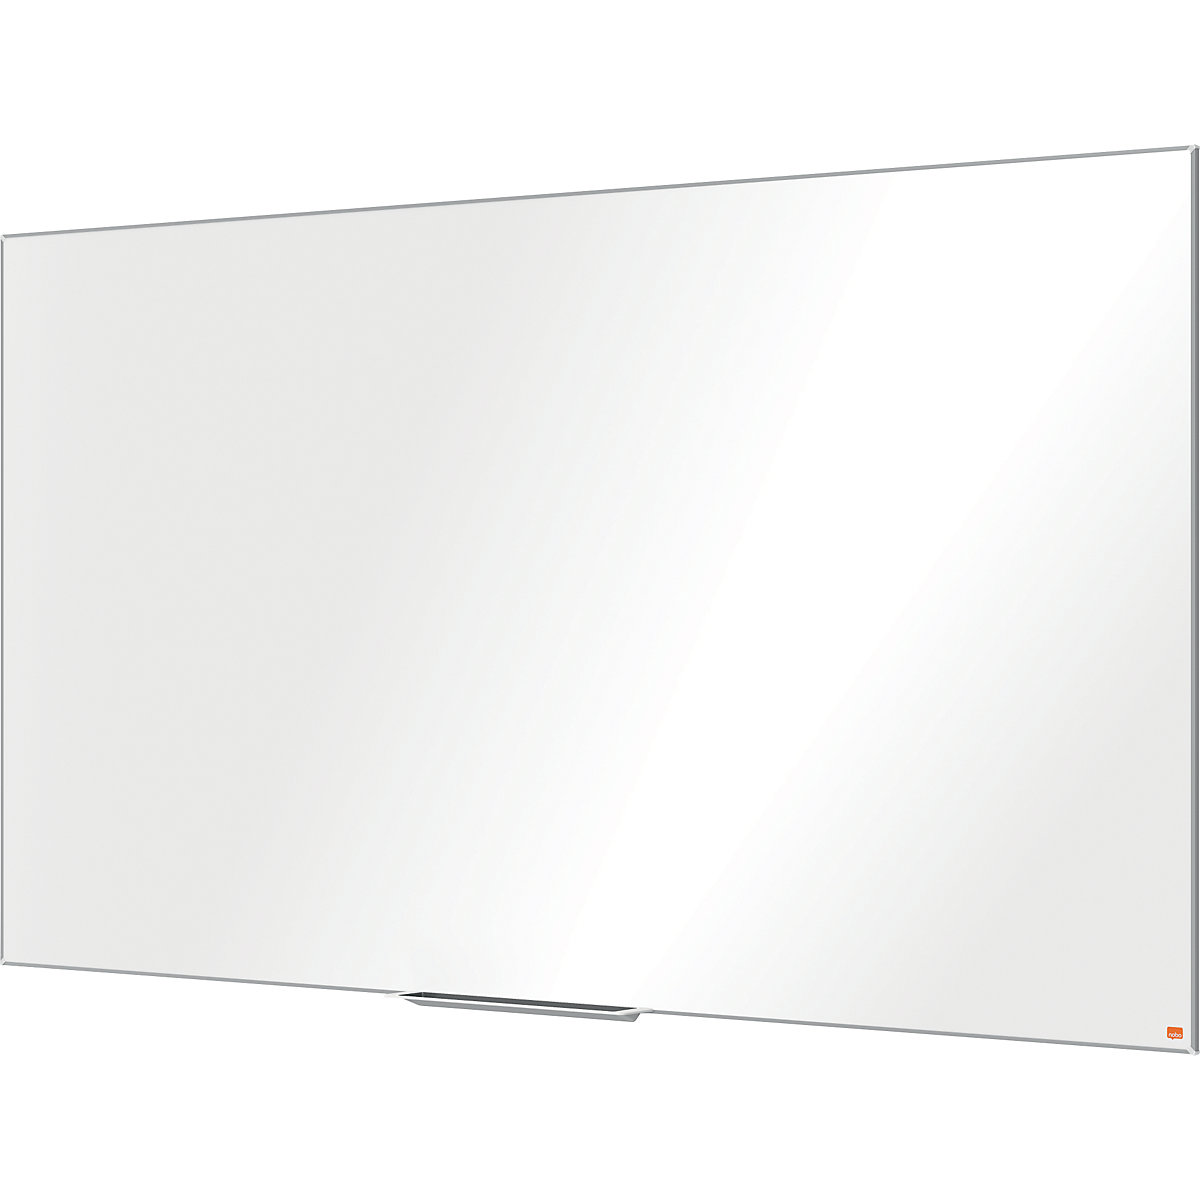 Lavagna bianca PRO – nobo, formato widescreen, acciaio smaltato, 85'', largh. x alt. 1887 x 1064 mm-7